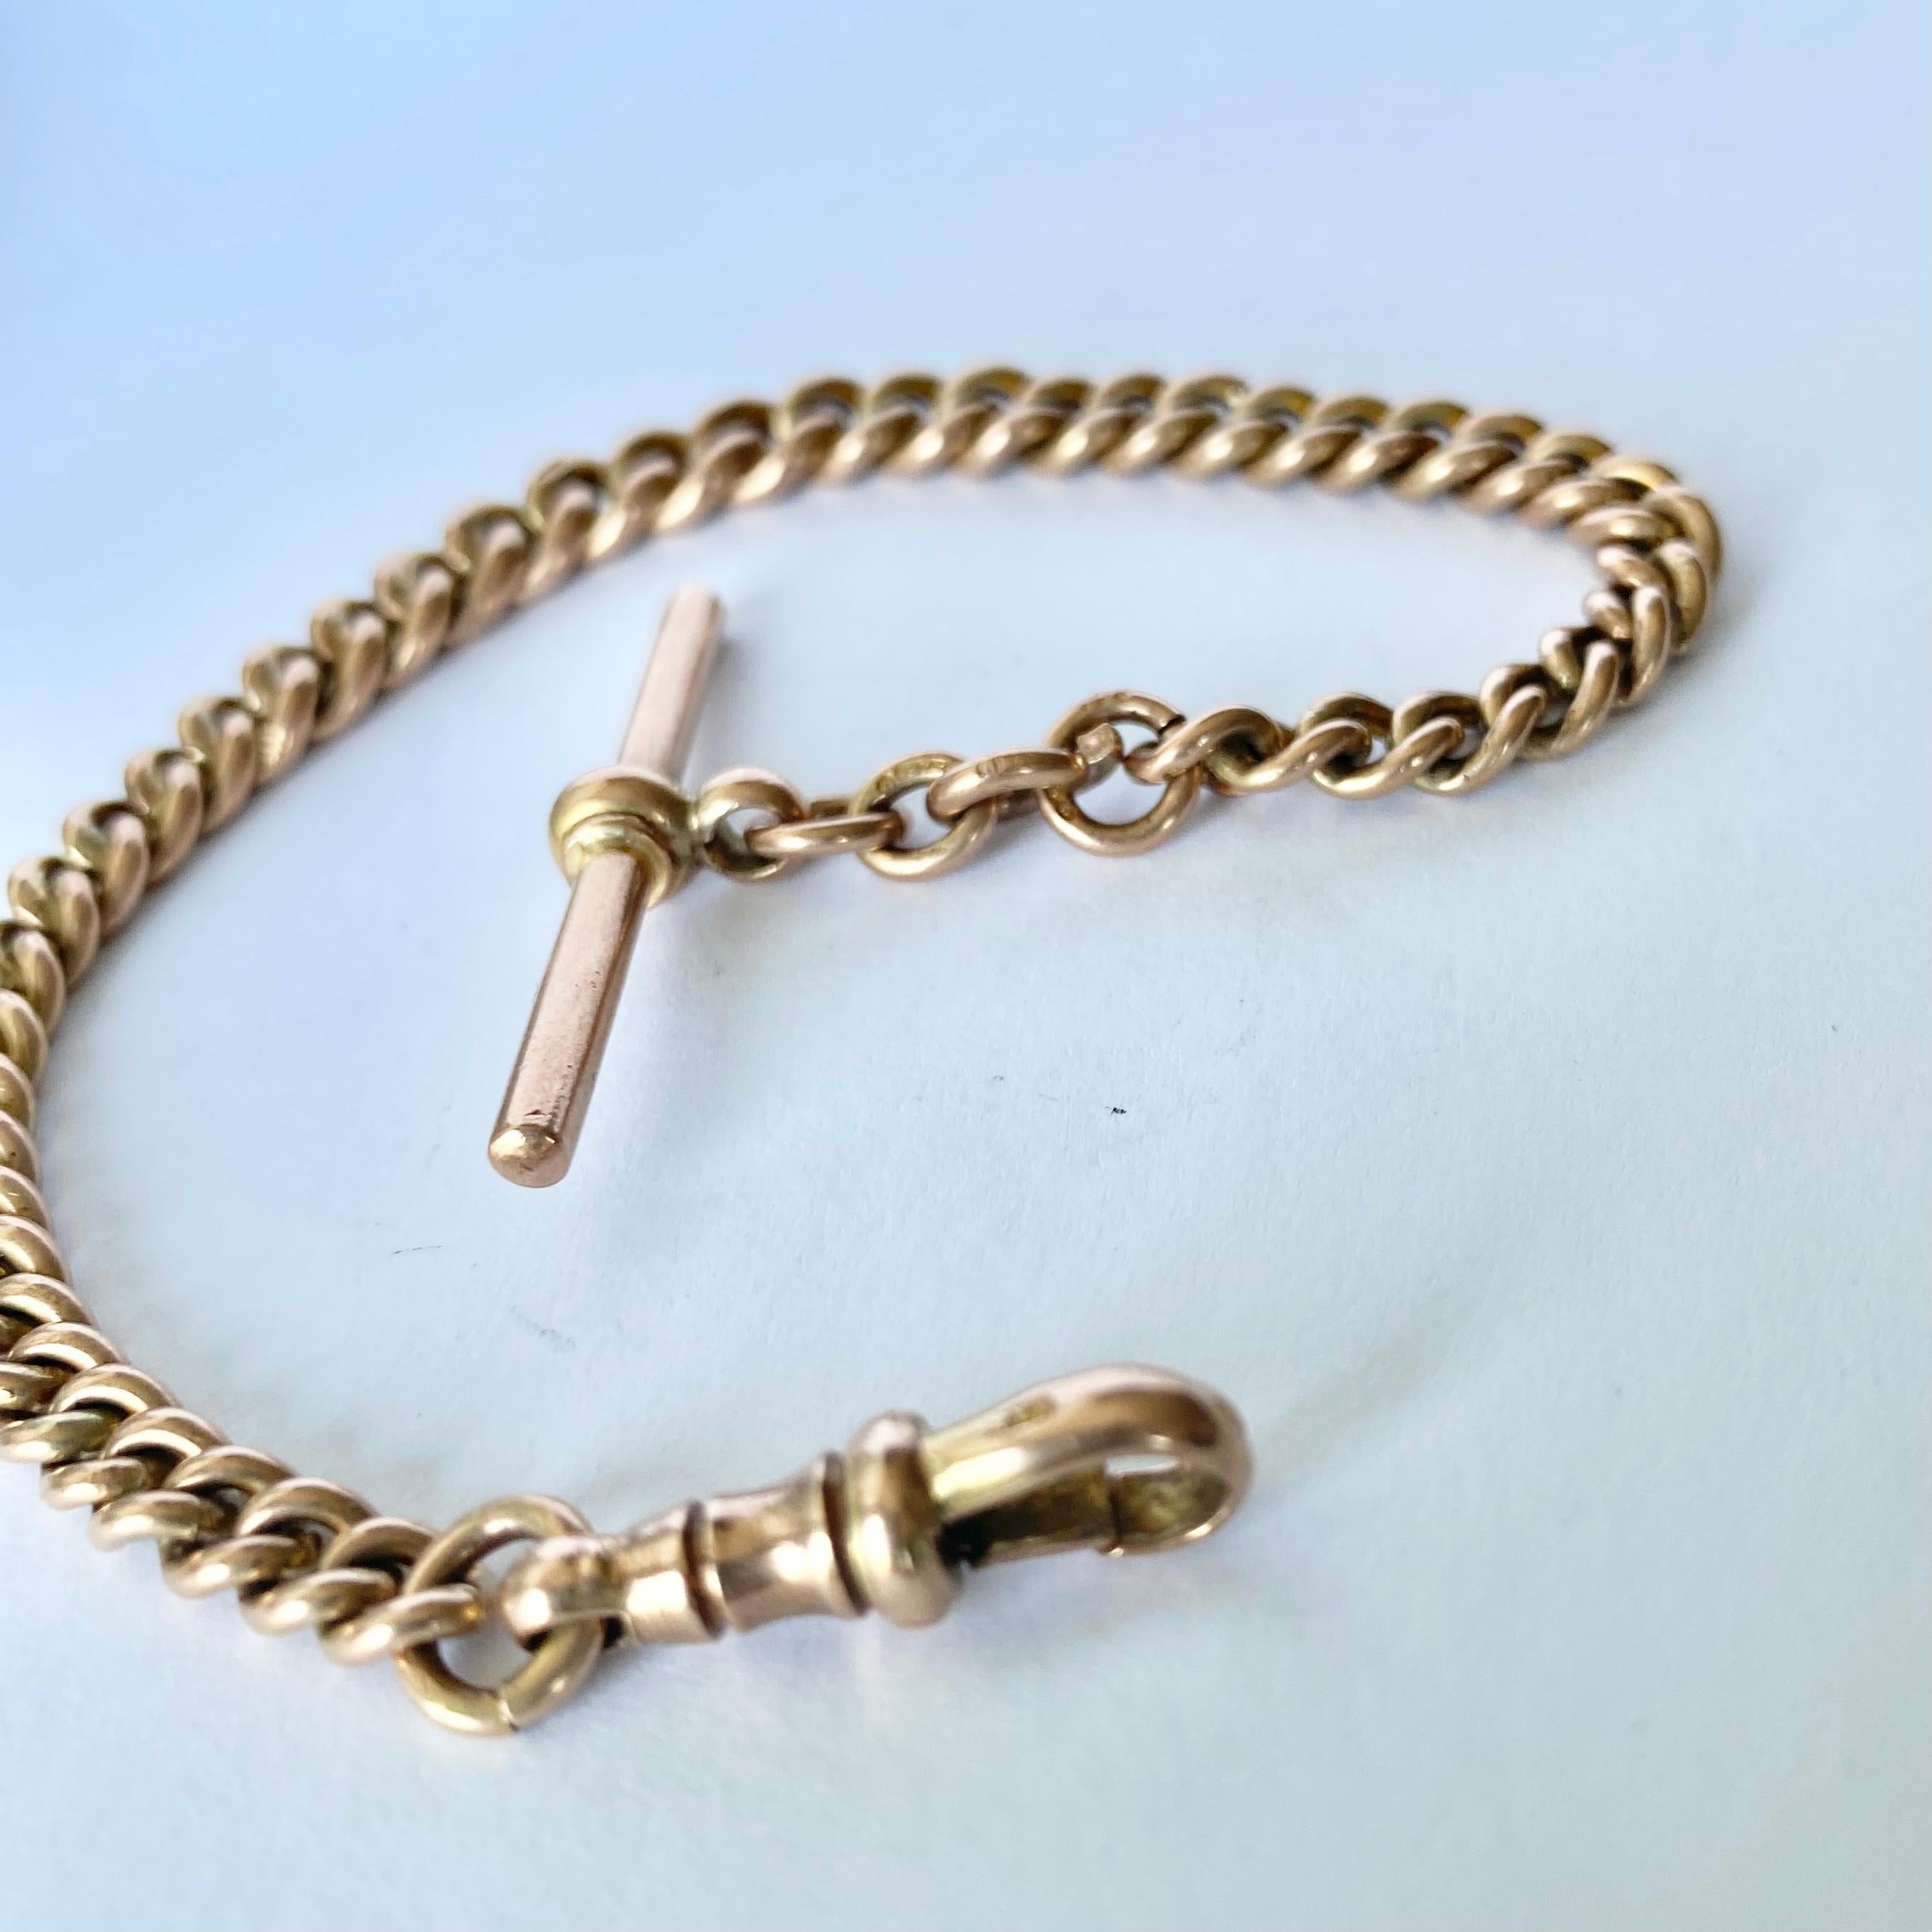 Dieses glänzende 9-karätige Goldarmband ist aus massivem Gold gefertigt und verfügt über eine Hundeklemme an einem Ende und einen T-Steg am anderen.  Jede Kandare ist mit einer Punzierung versehen.

Länge: 20 cm
Breite: 6-4,5 mm

Gewicht: 22g